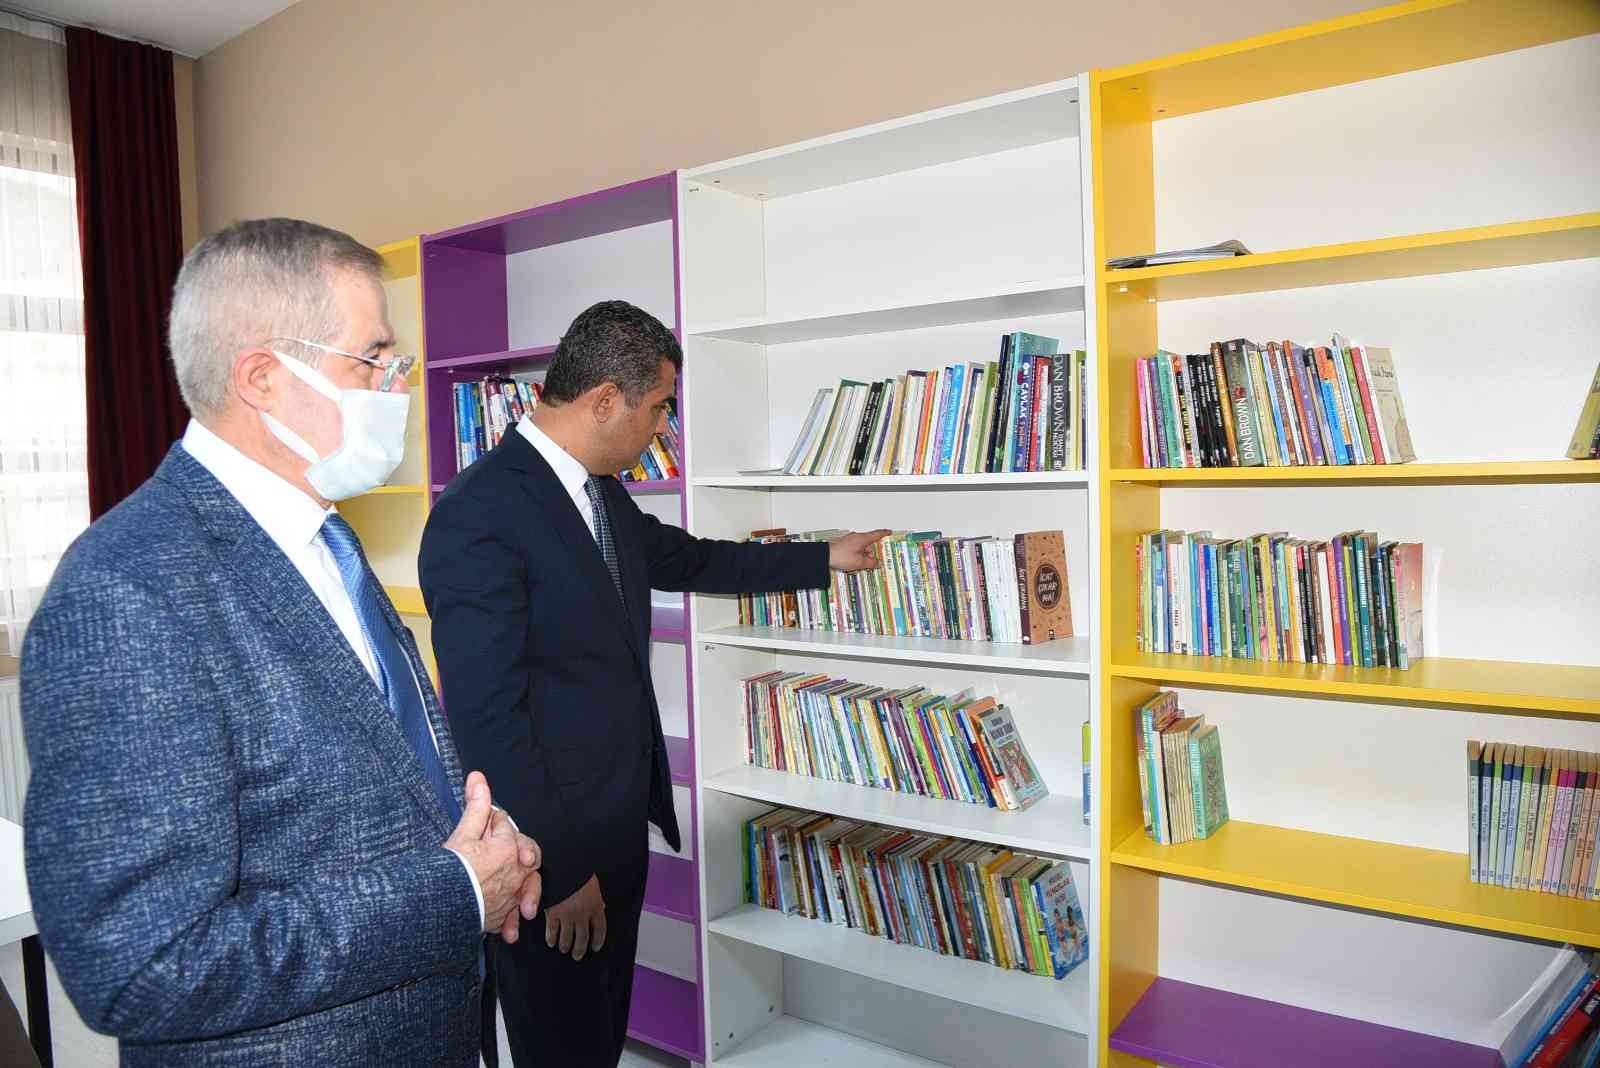 Denizli’de 131 okul yeni kütüphanesine kavuştu #denizli